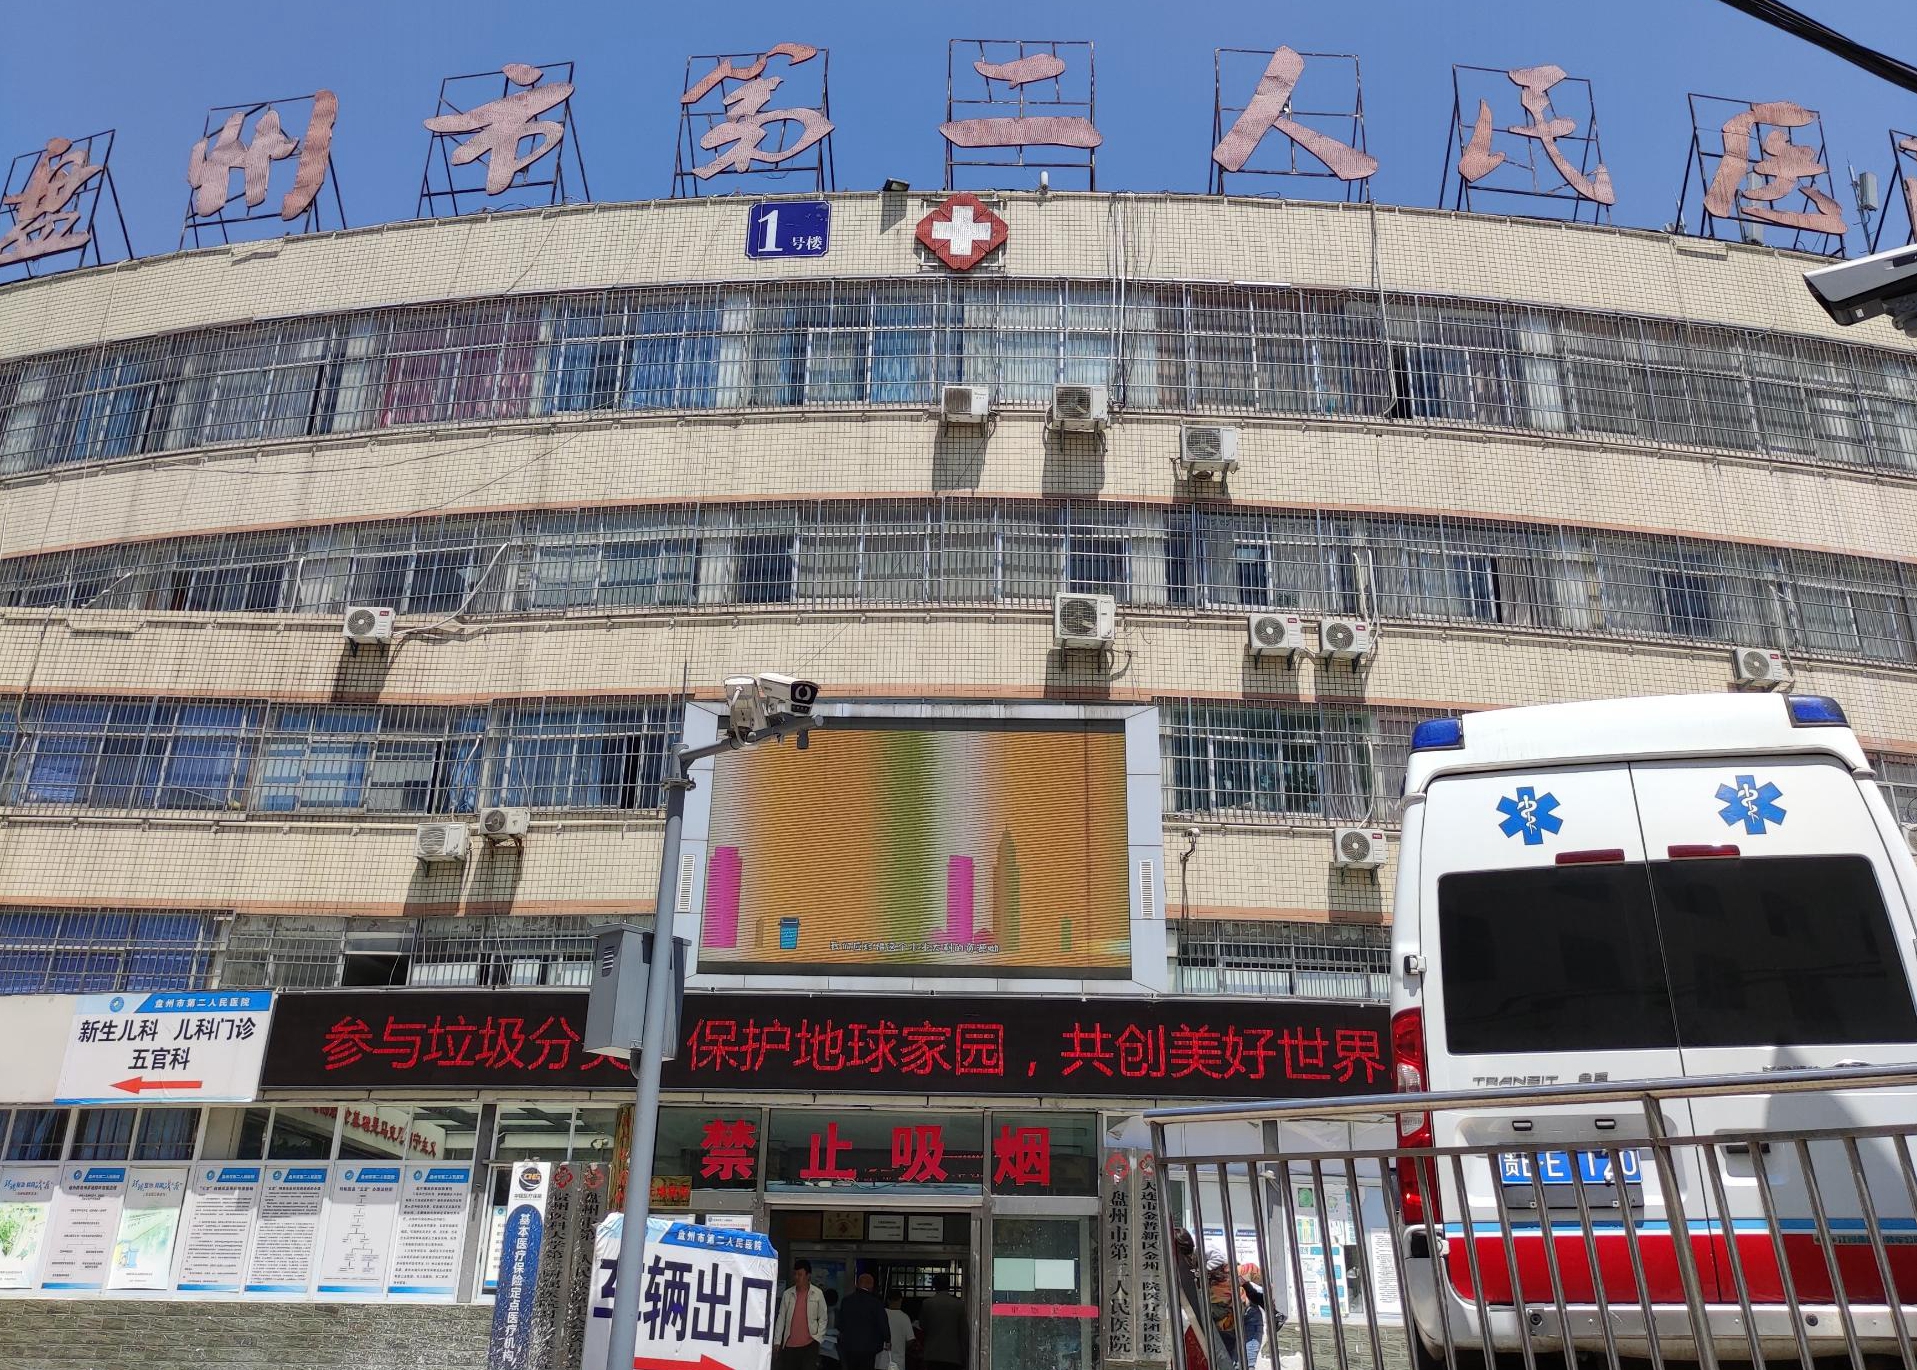 6.1祝贺全自动母乳分析仪在贵州六盘水第二人民医院成功安装